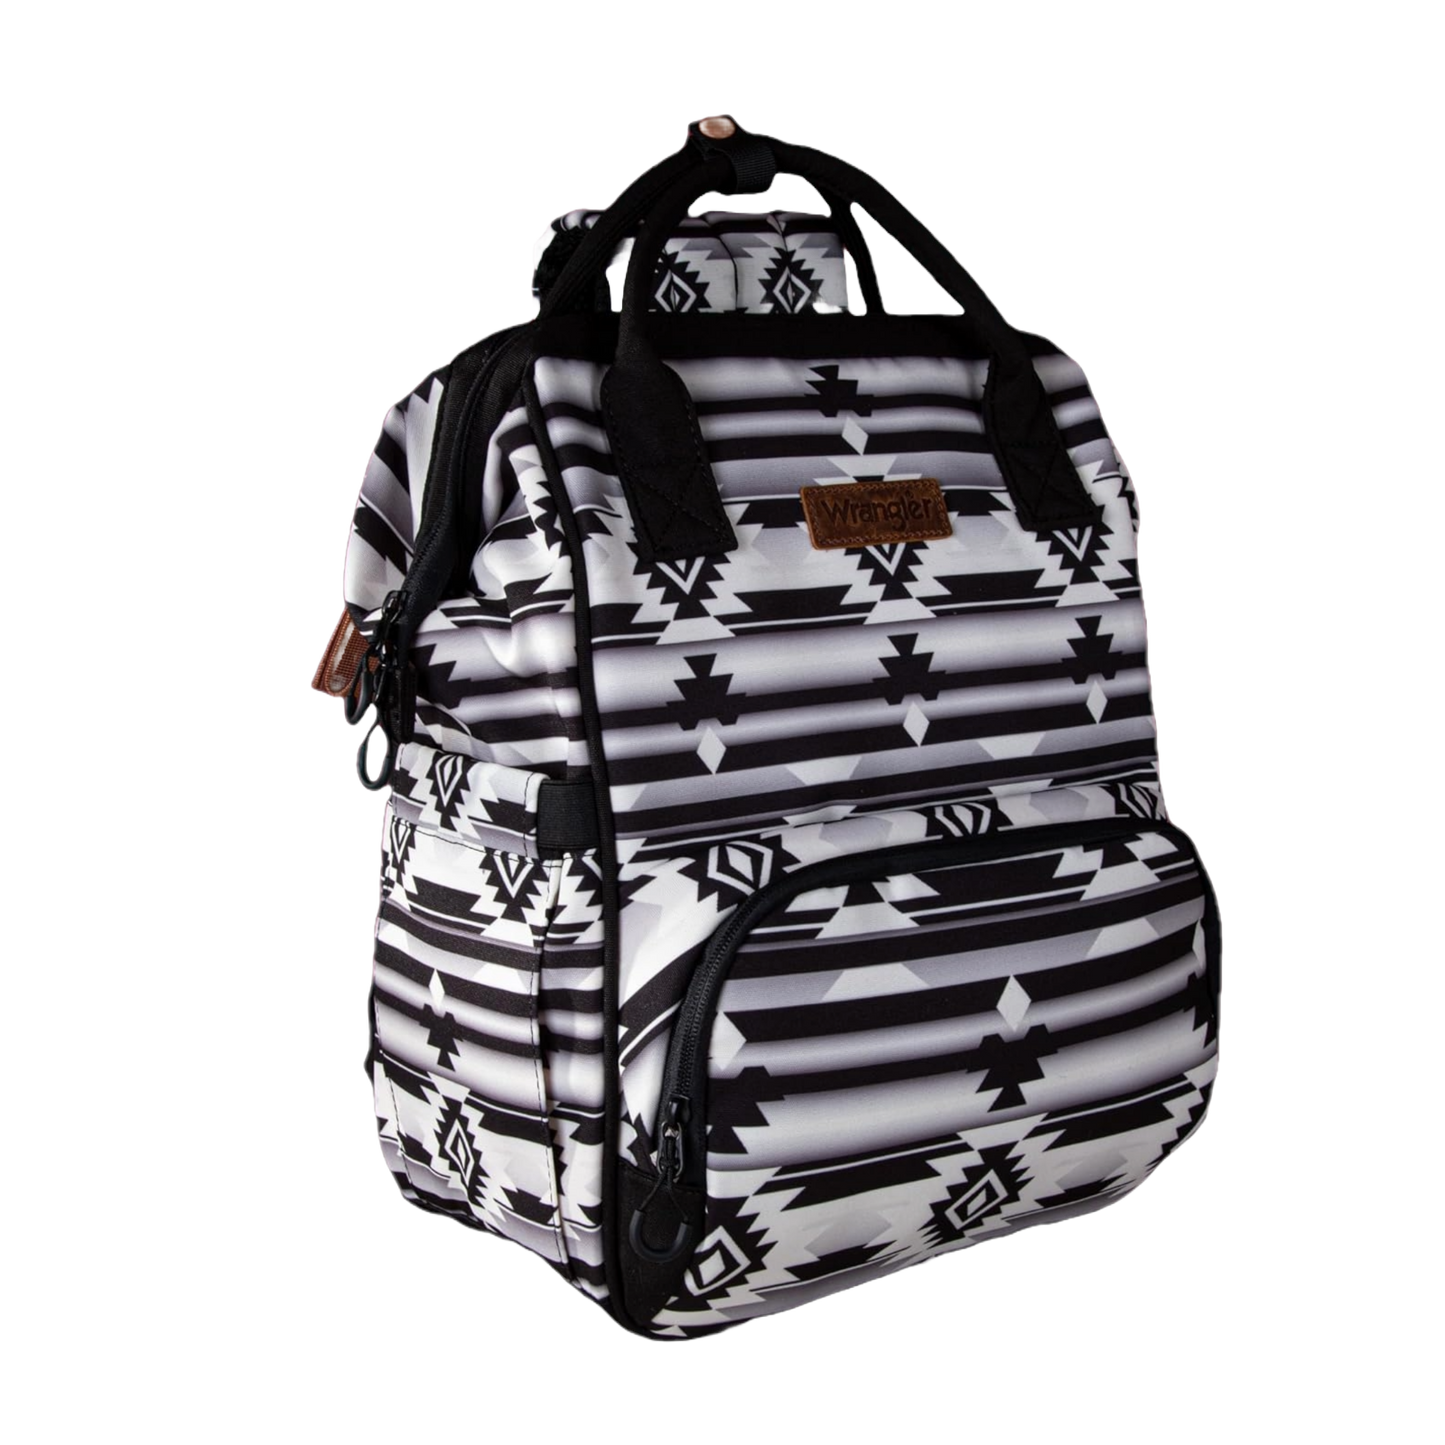 Wrangler Allover Aztec Printed Black & White Backpack WG2204-9110BK